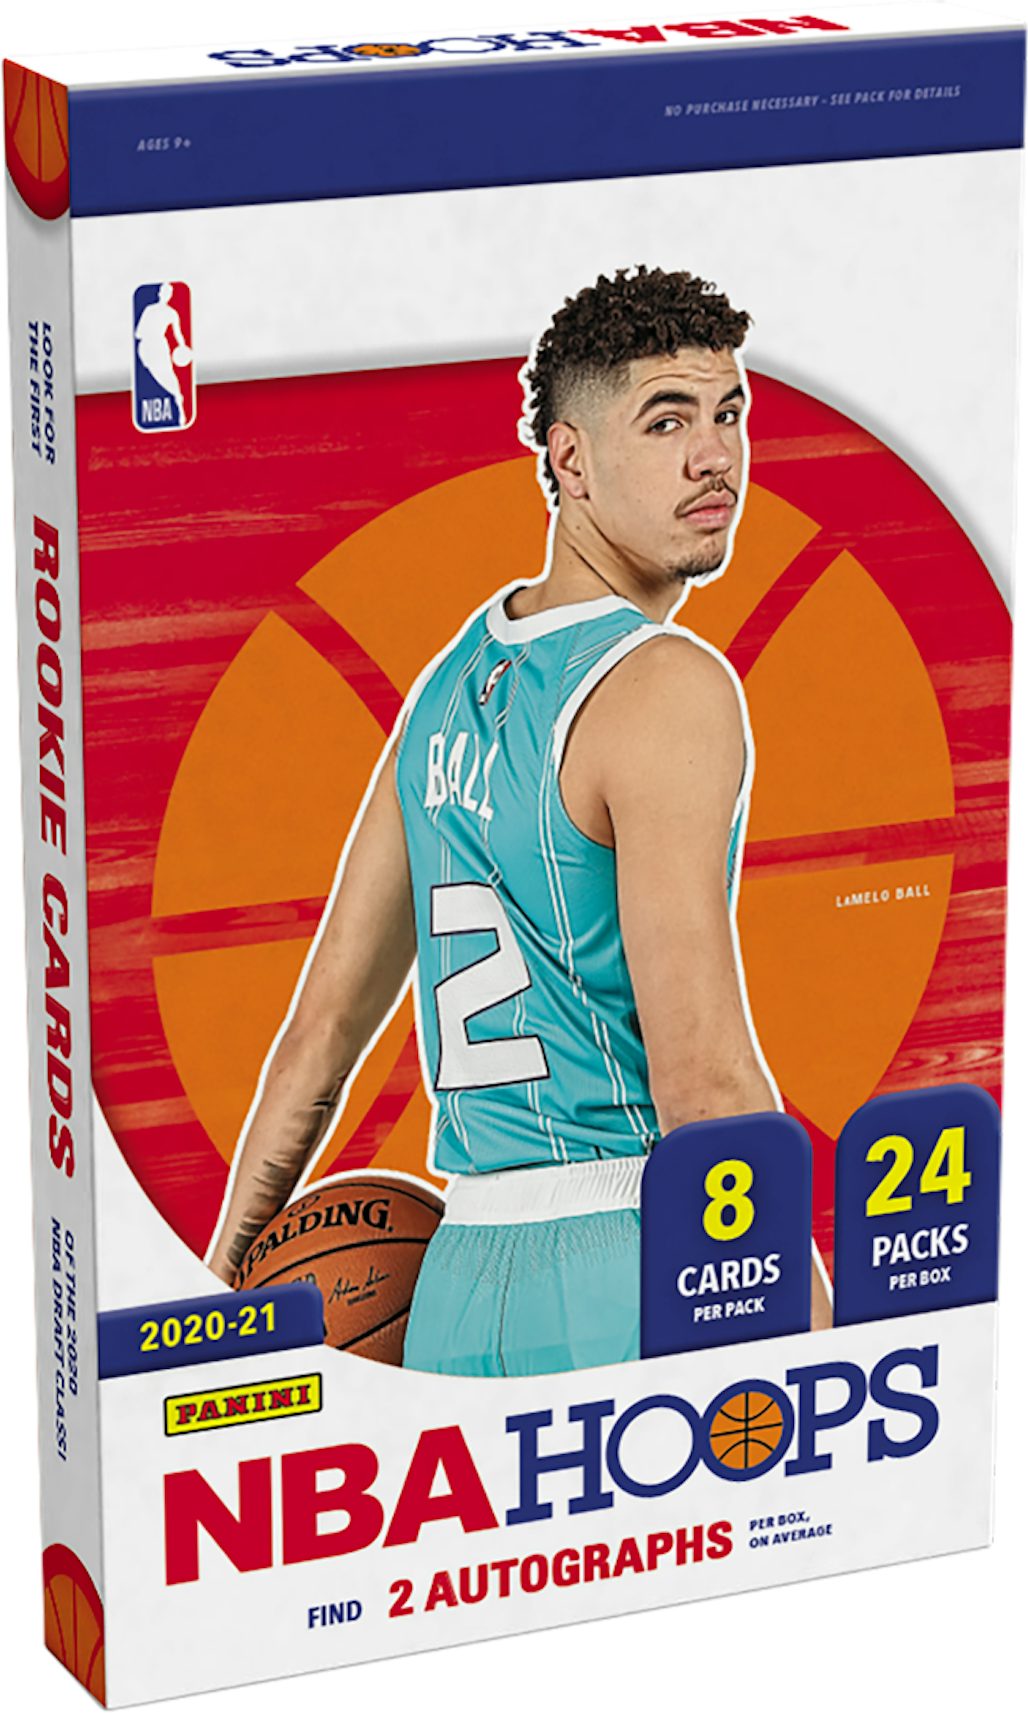 2021-22 Panini NBA Sticker & Card Collection Checklist, Info, Box